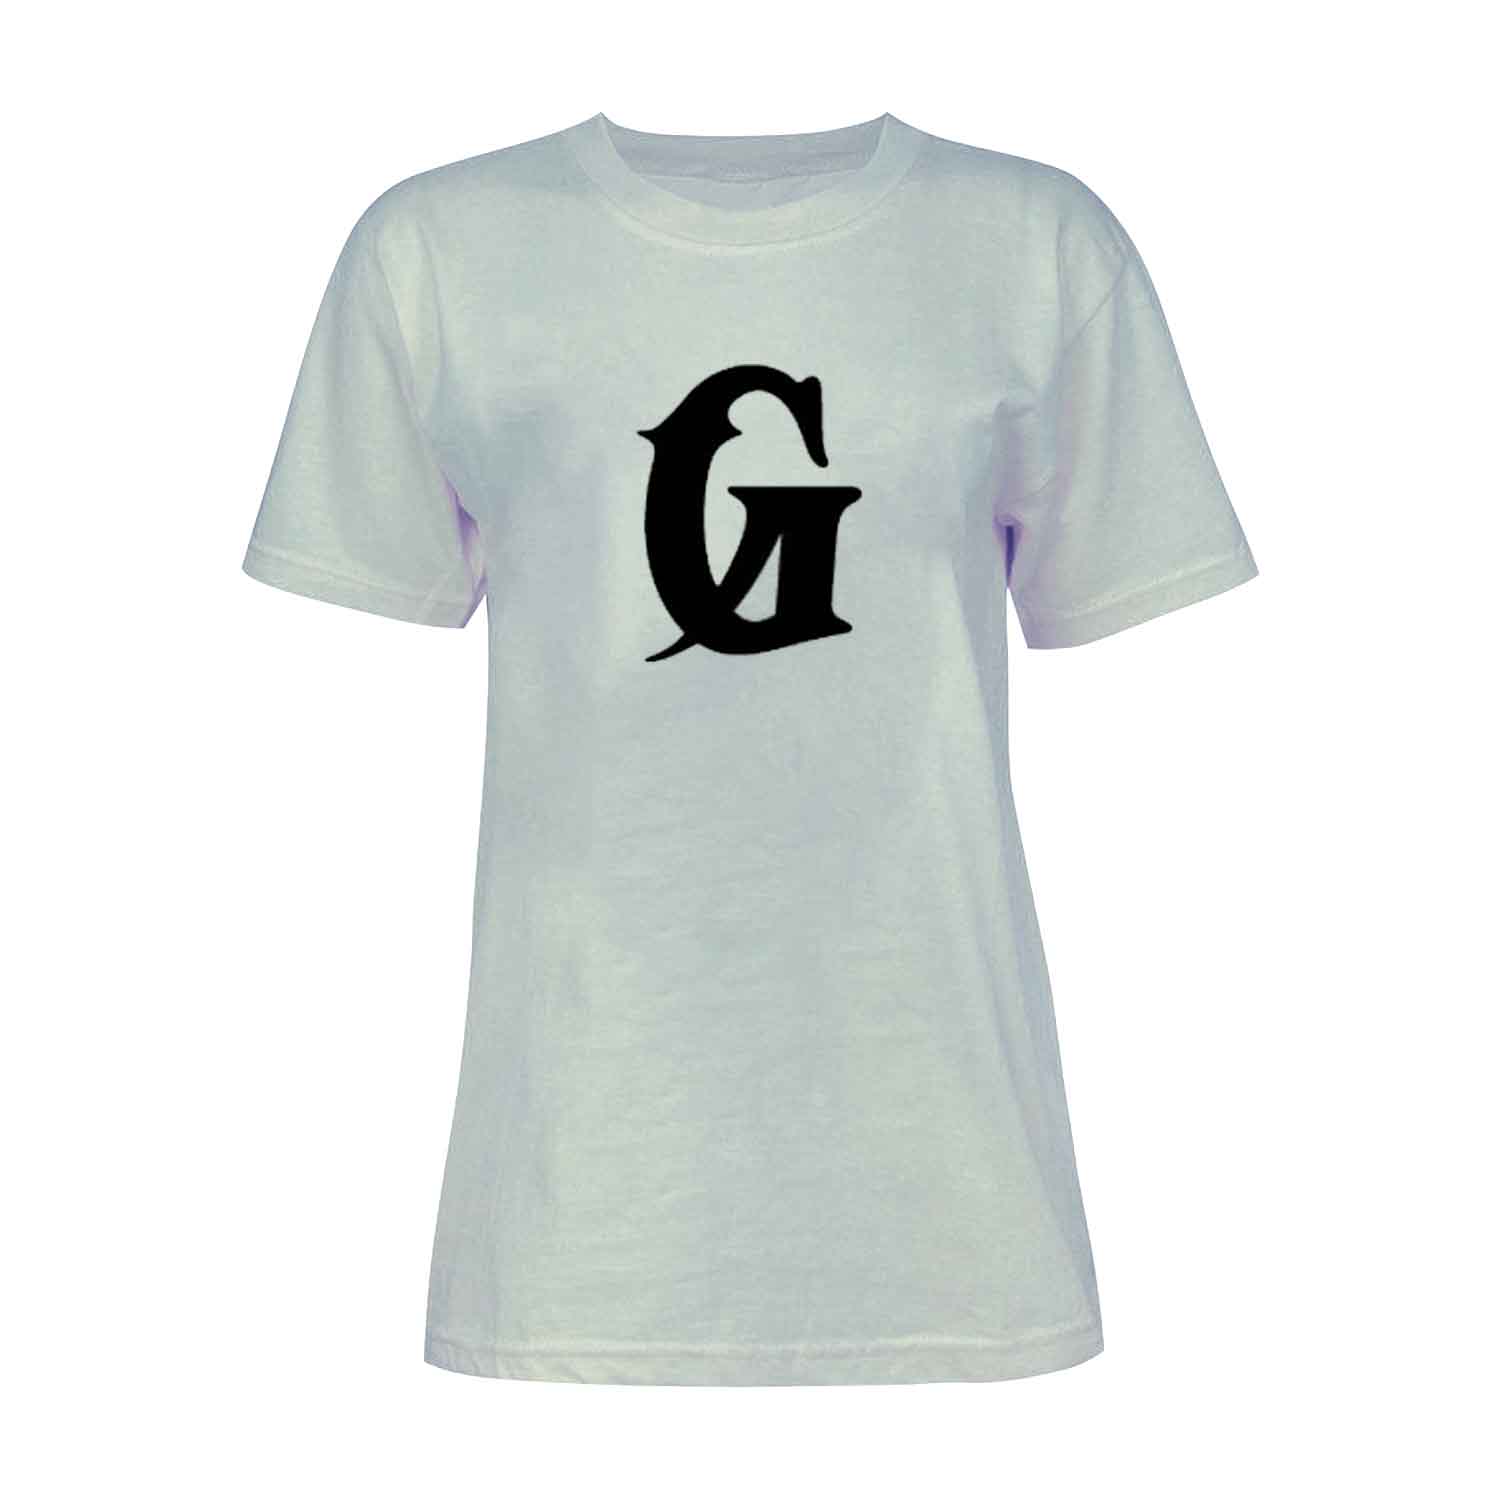 تی شرت آستین کوتاه زنانه مدل حرف G کد L225 رنگ طوسی